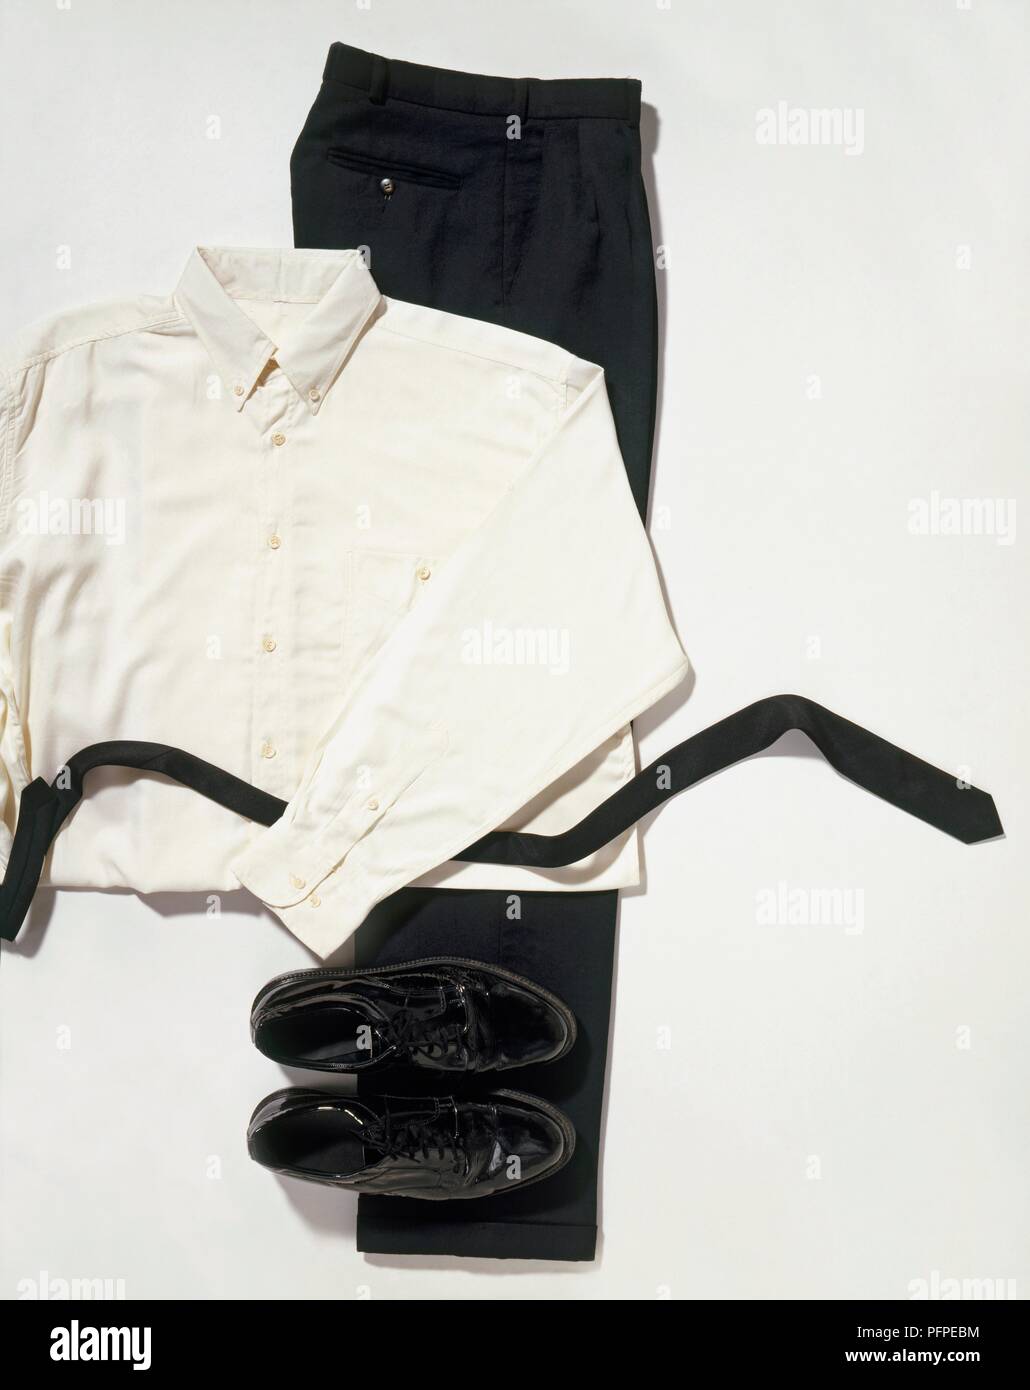 Los hombres de pantalón negro, zapatos y cinturón Fotografía stock - Alamy